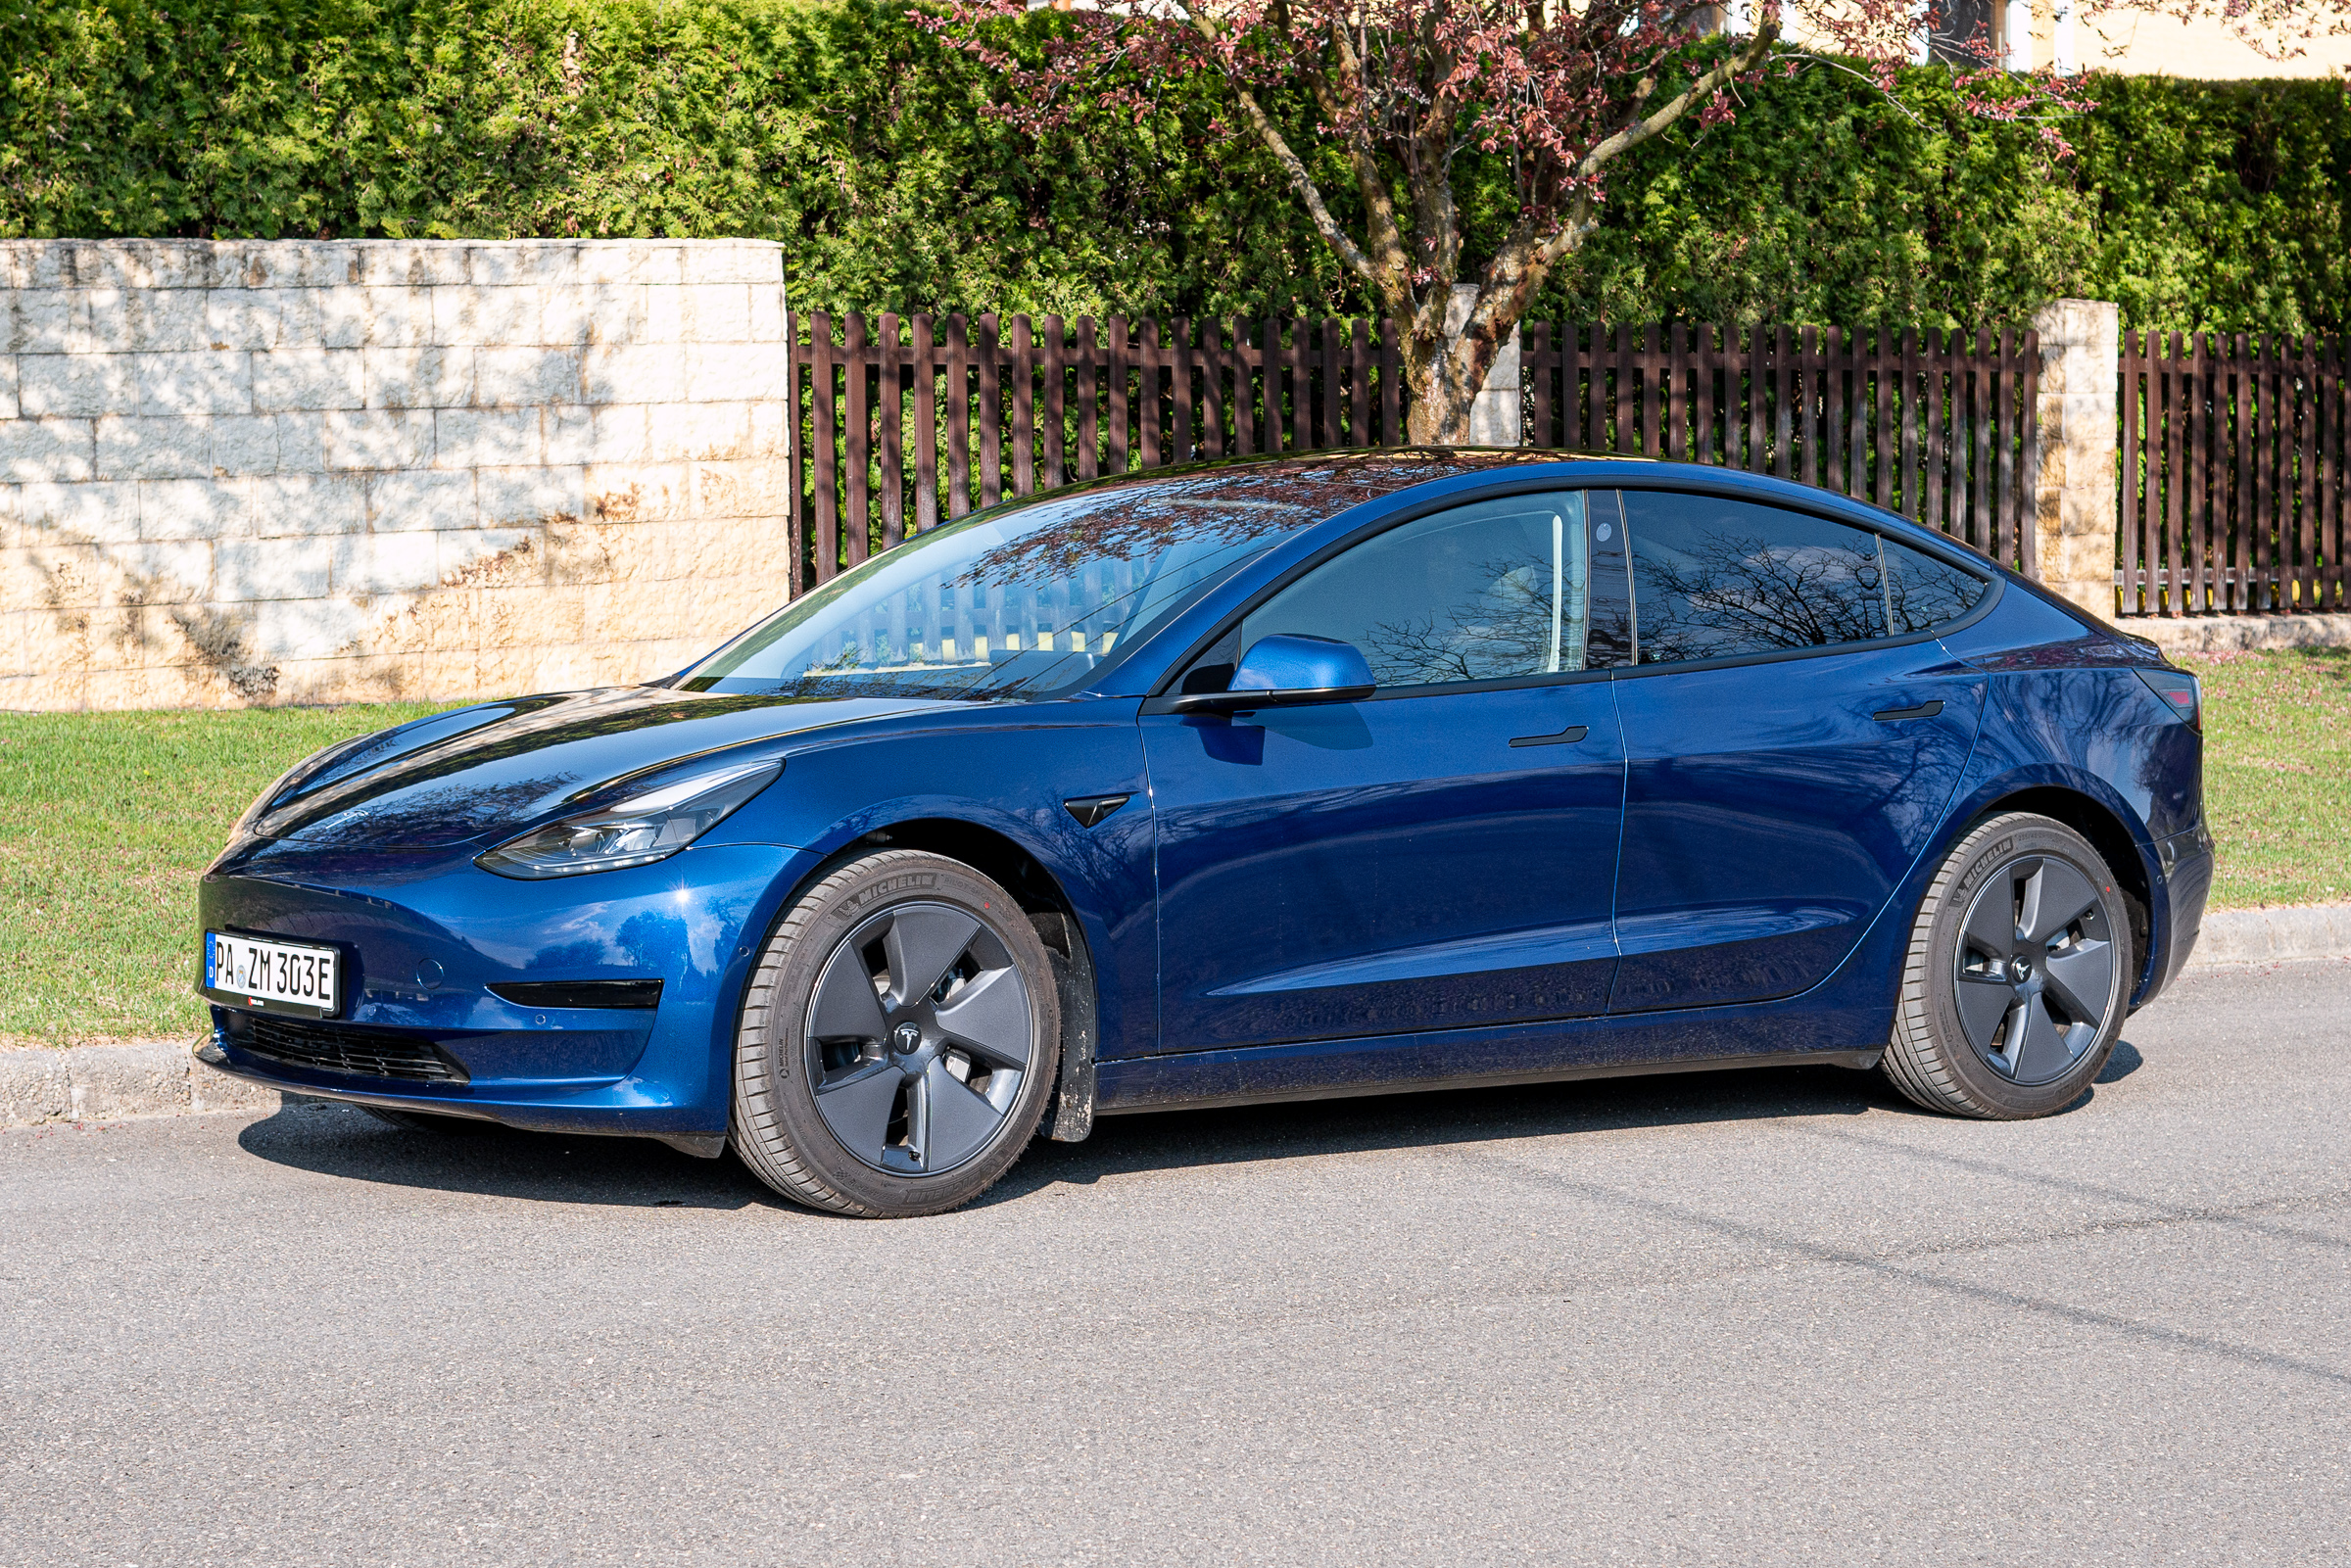 Villanyautó teszt: Tesla Model 3 SR+ (facelift) - Villanyautósok